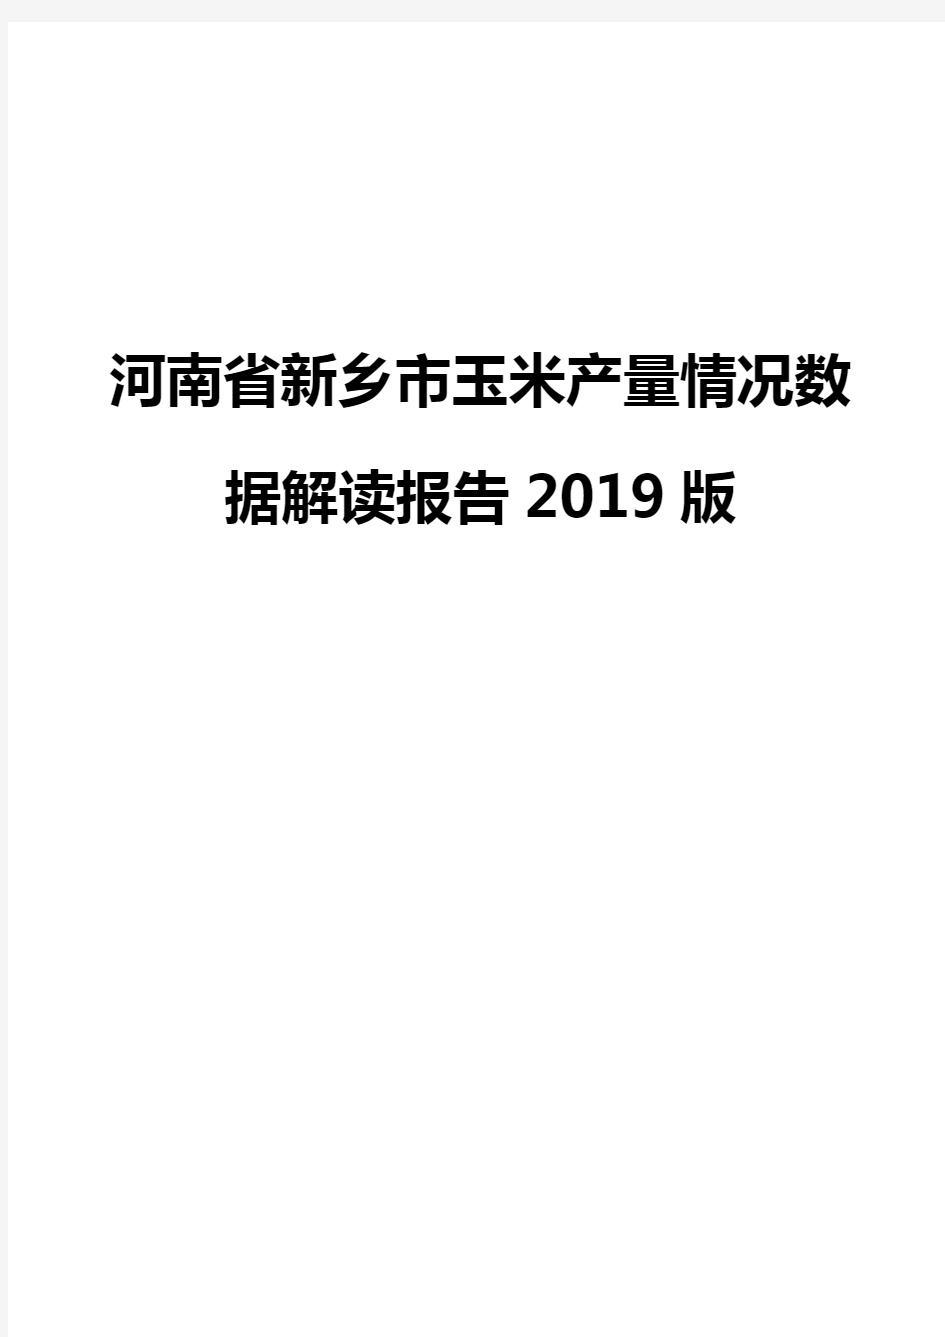 河南省新乡市玉米产量情况数据解读报告2019版